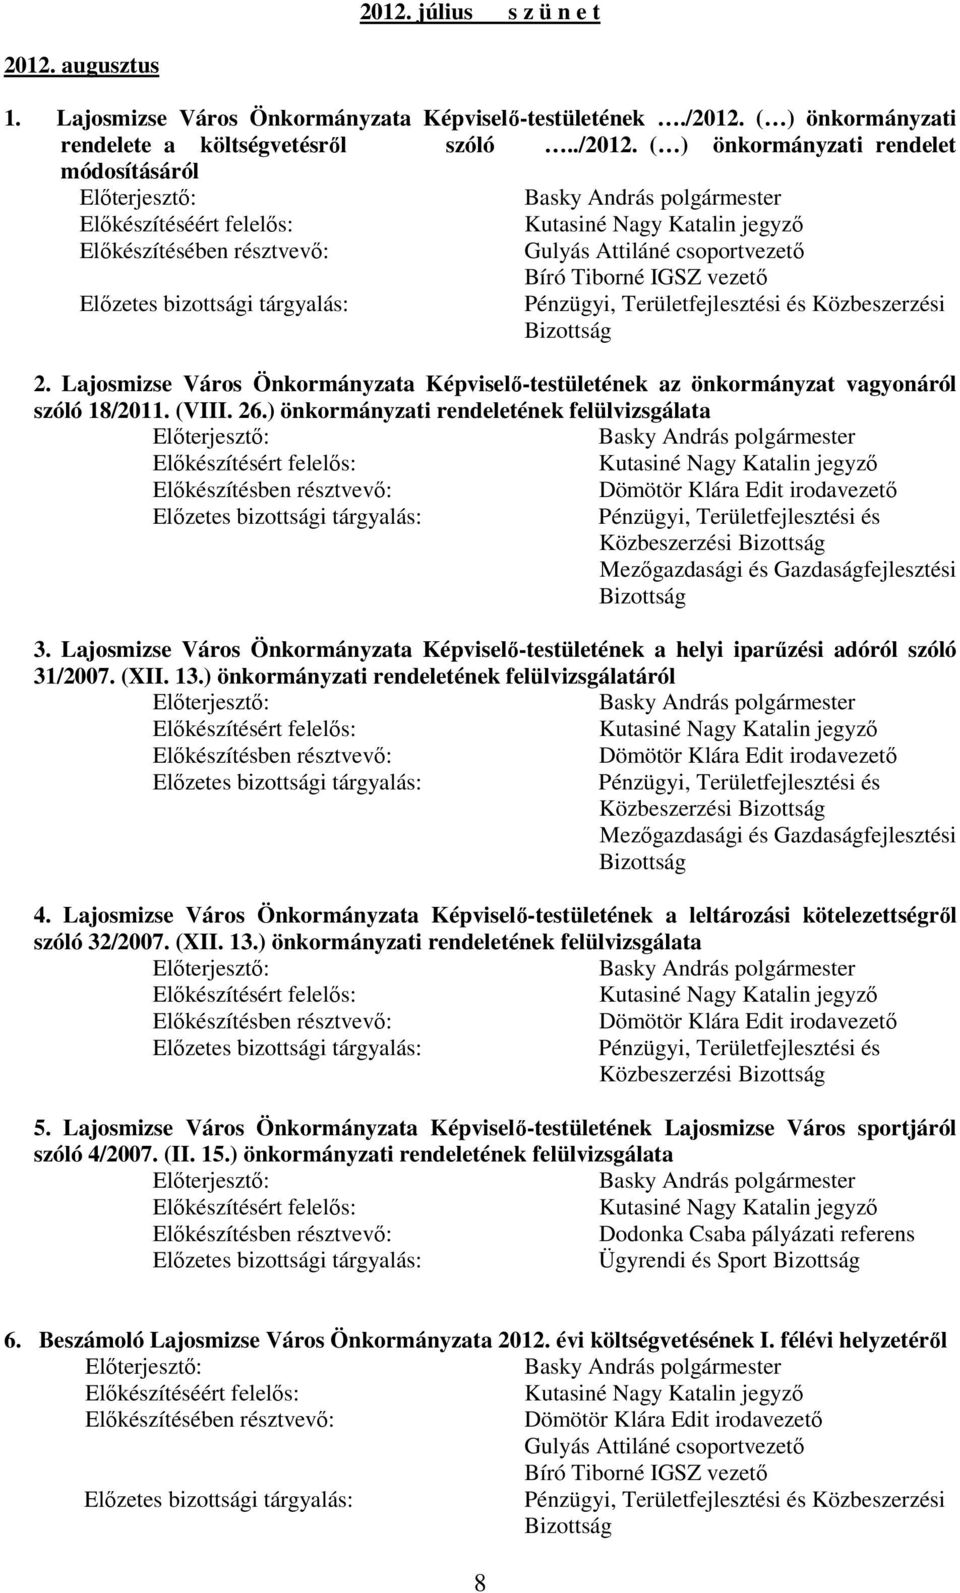 Lajosmizse Város Önkormányzata Képviselı-testületének a helyi iparőzési adóról szóló 31/2007. (XII. 13.) önkormányzati rendeletének felülvizsgálatáról Közbeszerzési 4.